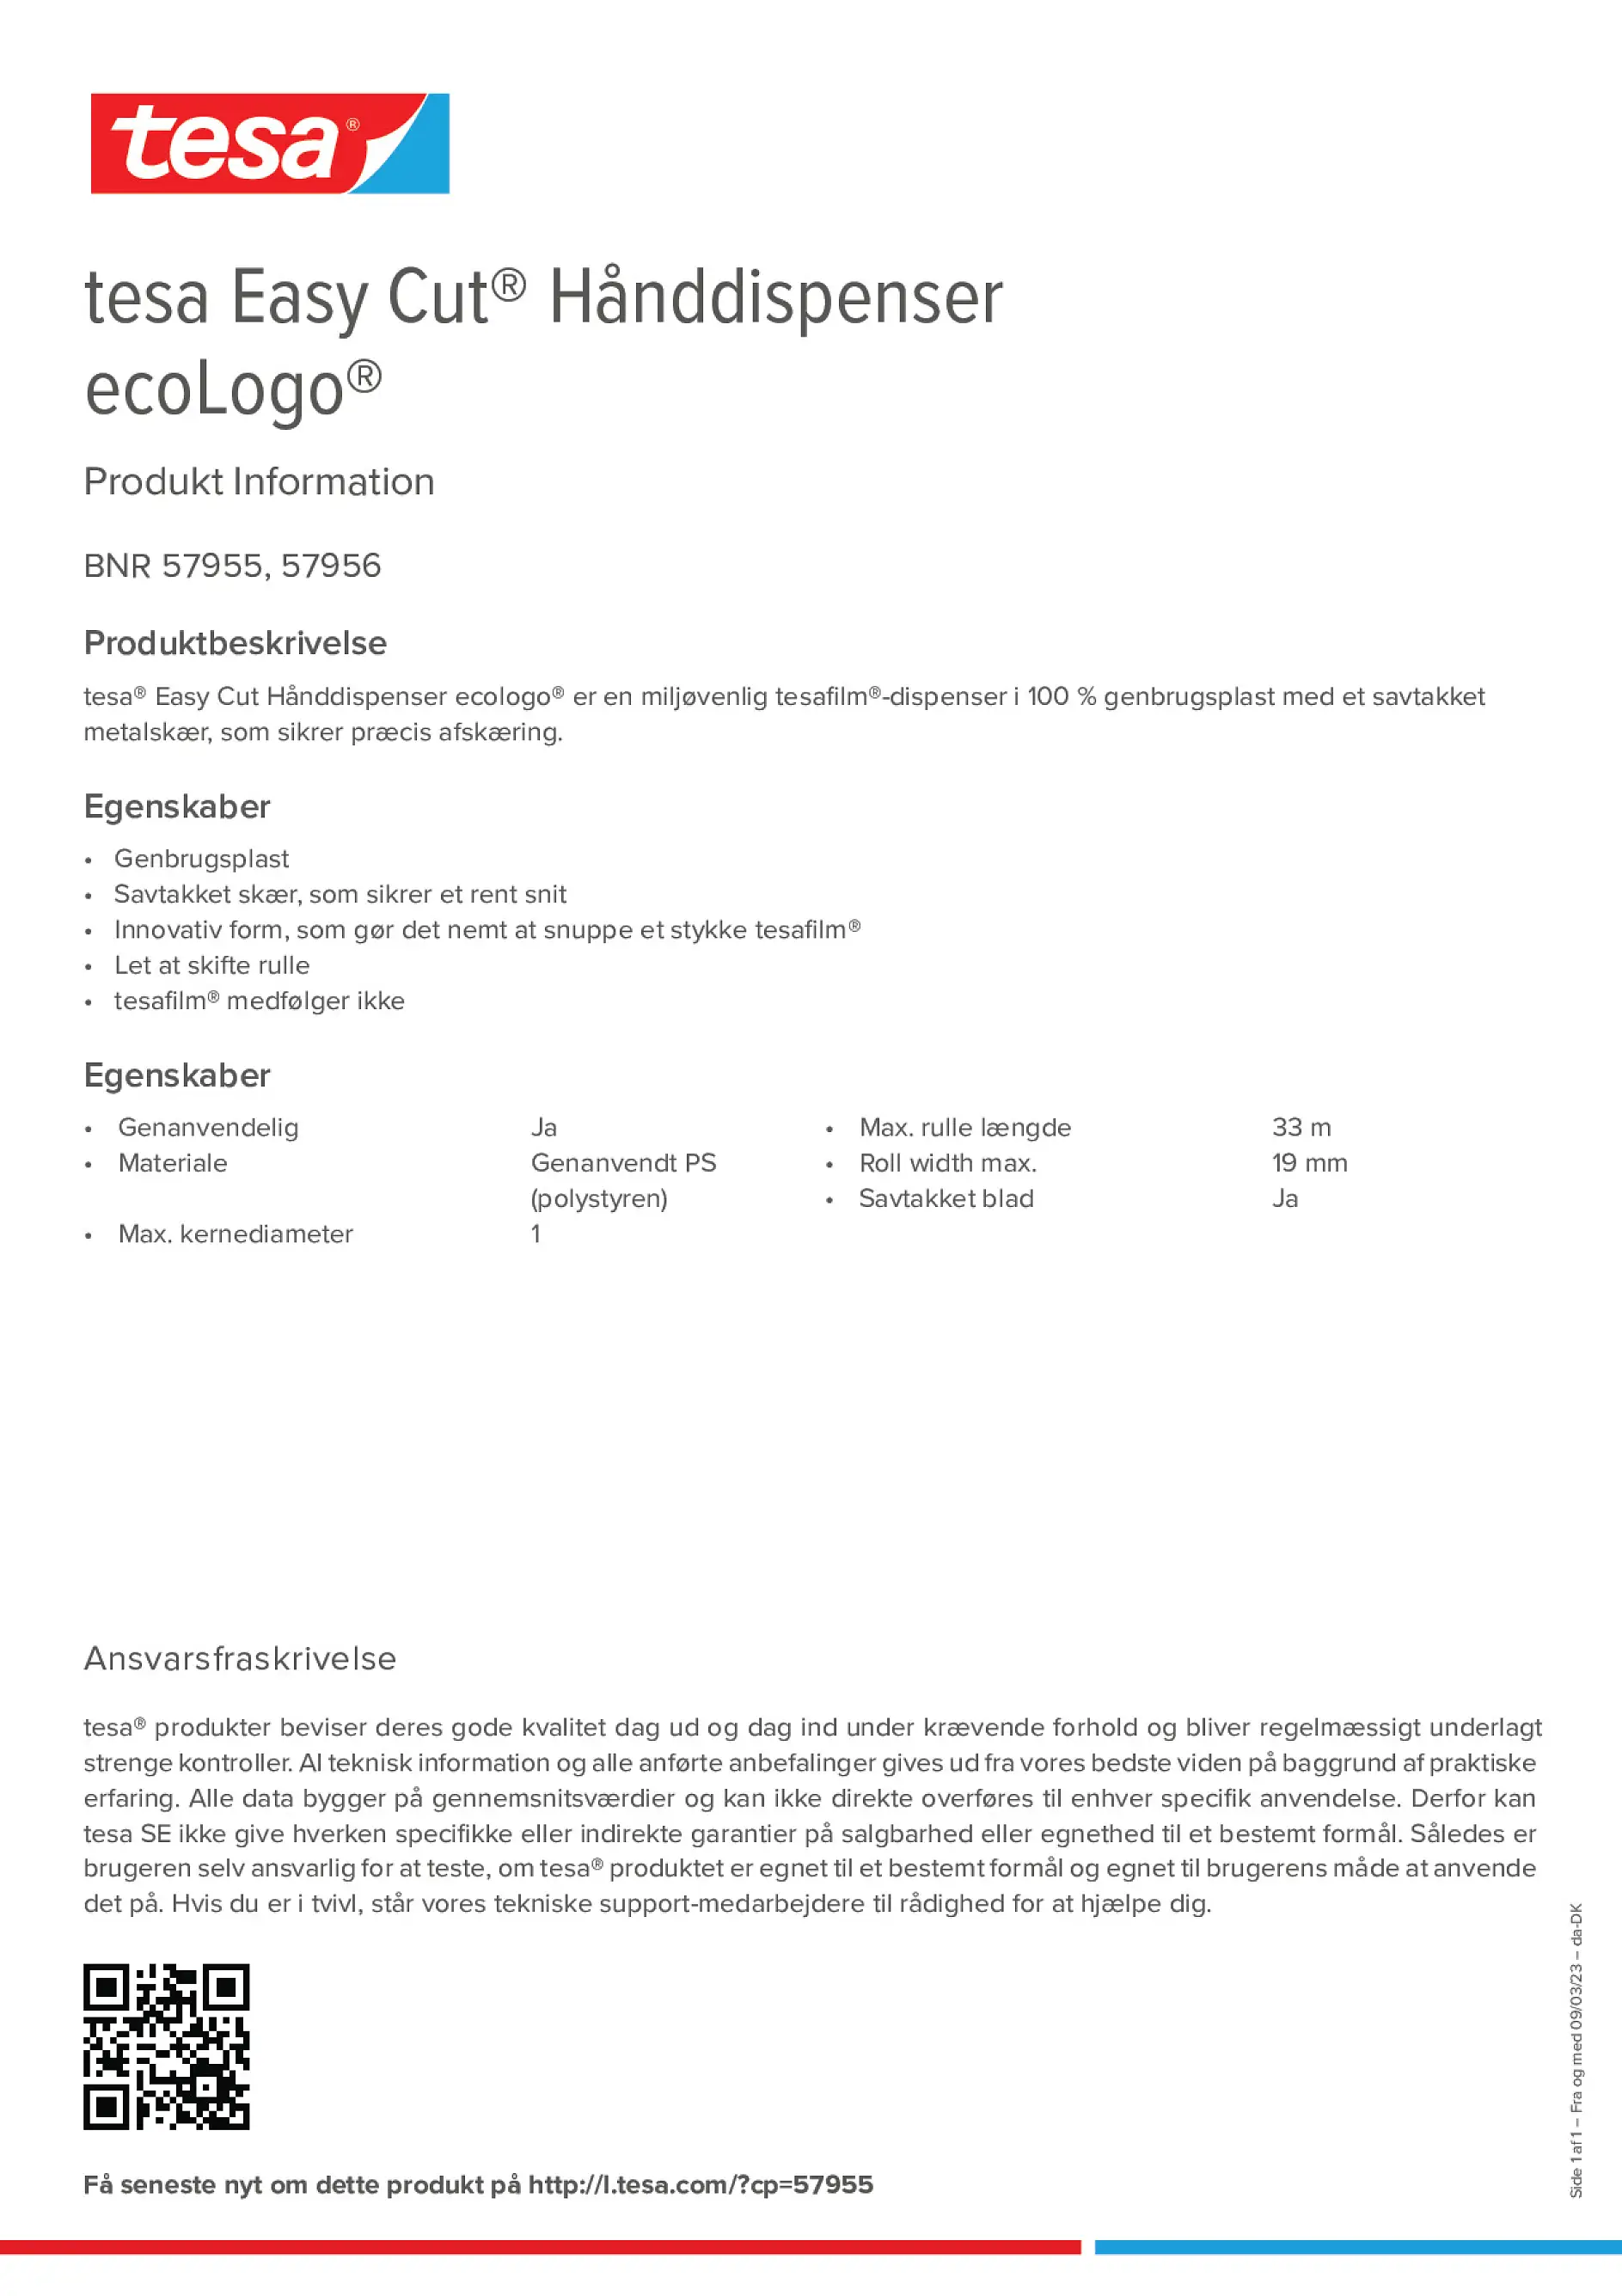 easy-cut-hand-dispenser-ecologo_copiw_da-DK